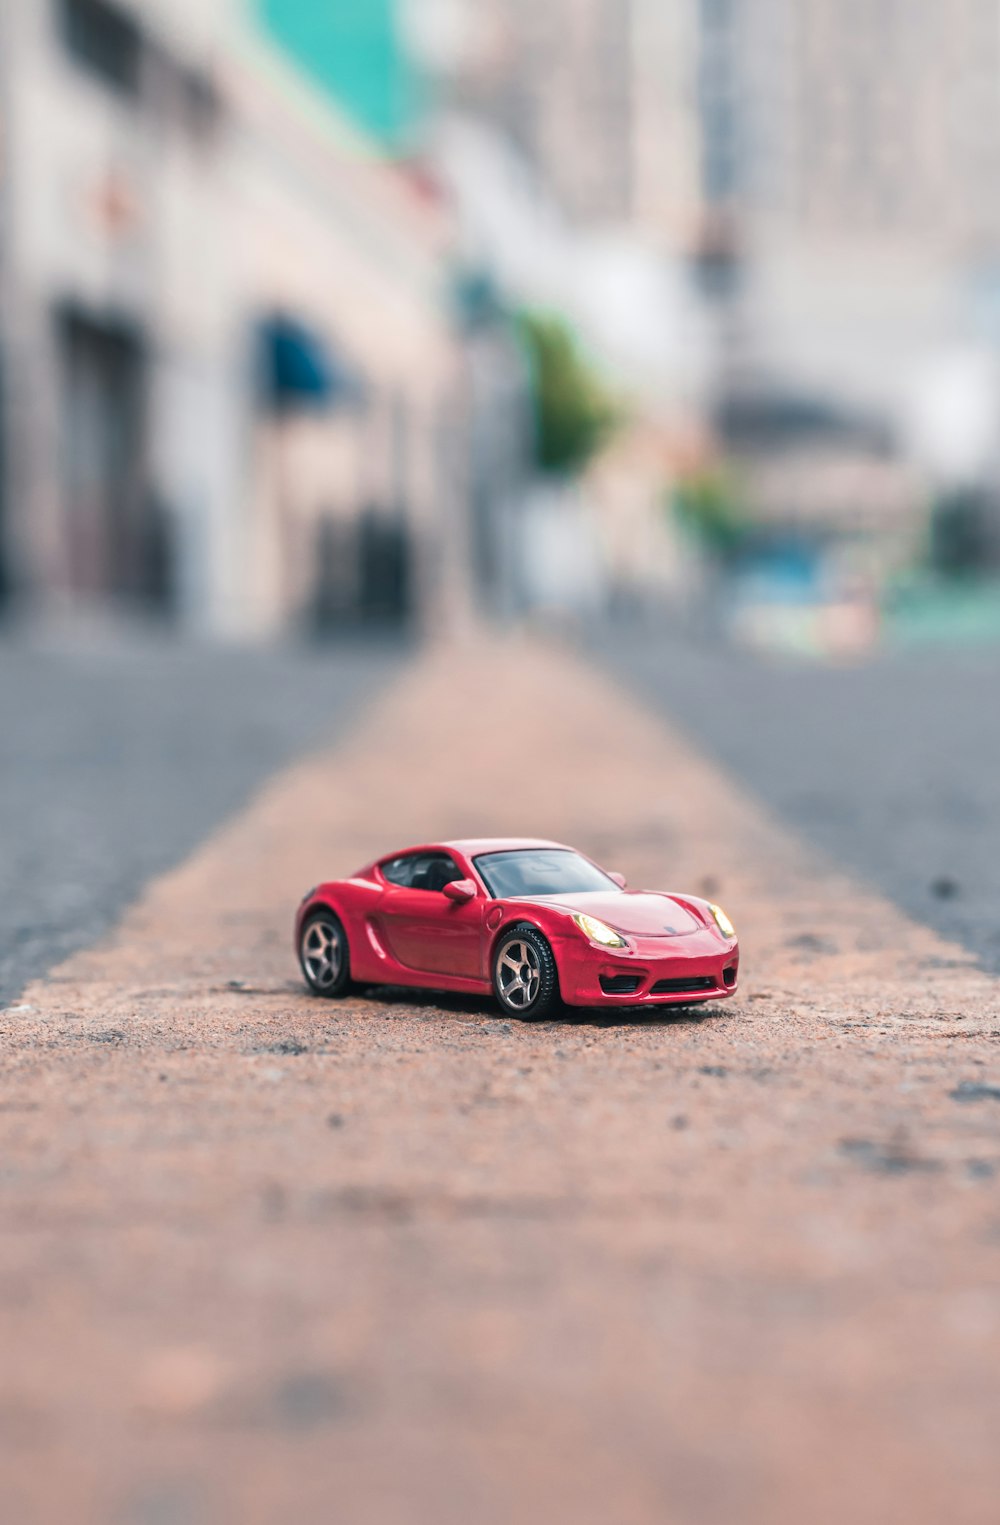 Photographie sélective de la maquette du coupé rouge sur route